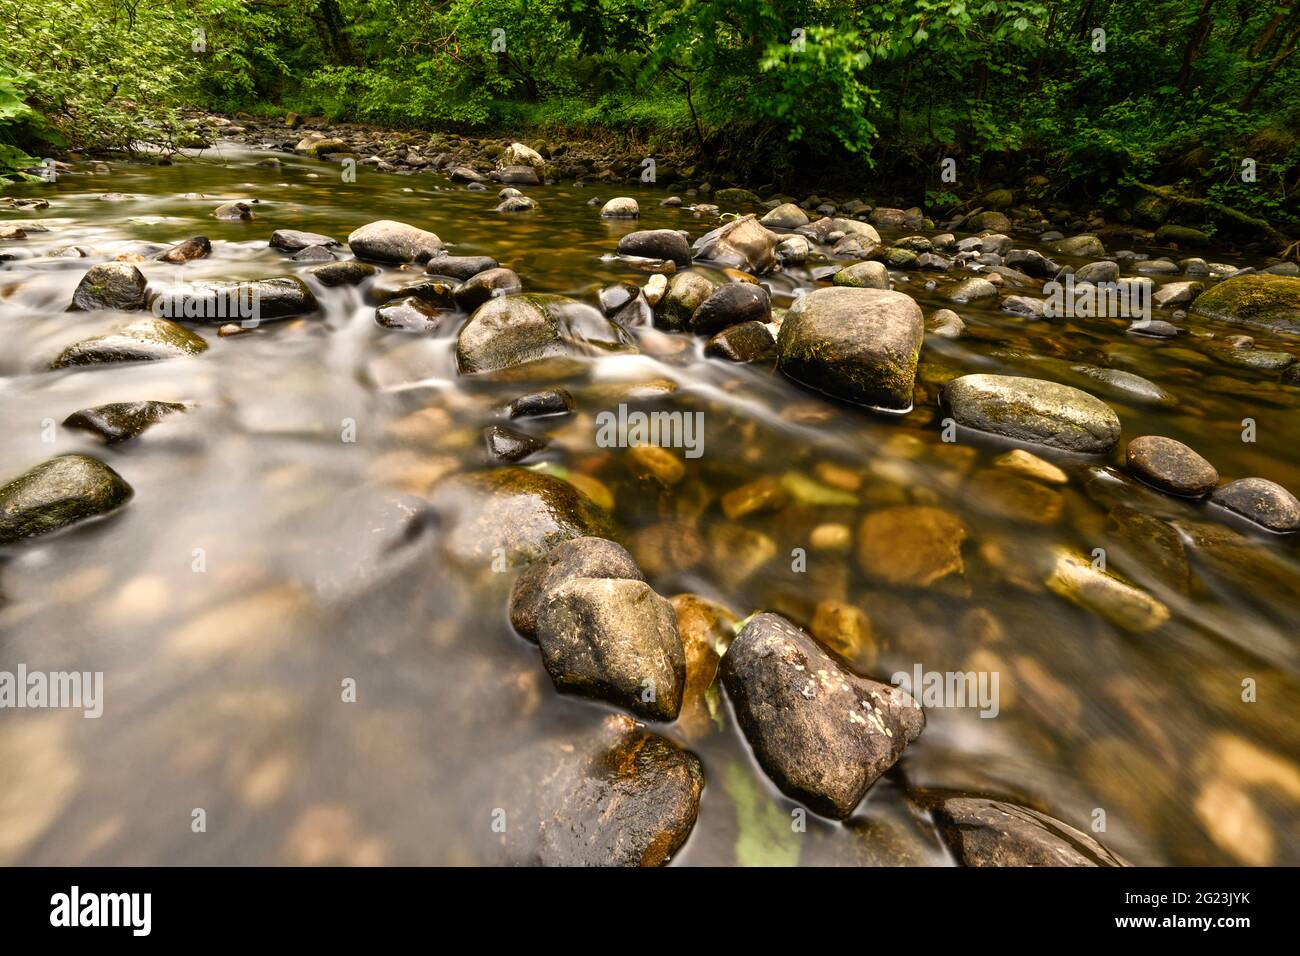 Fotografia a lunga esposizione del fiume Brock che cade su rocce a Brock fondo vicino Garstang in Lancashire, Regno Unito Foto Stock